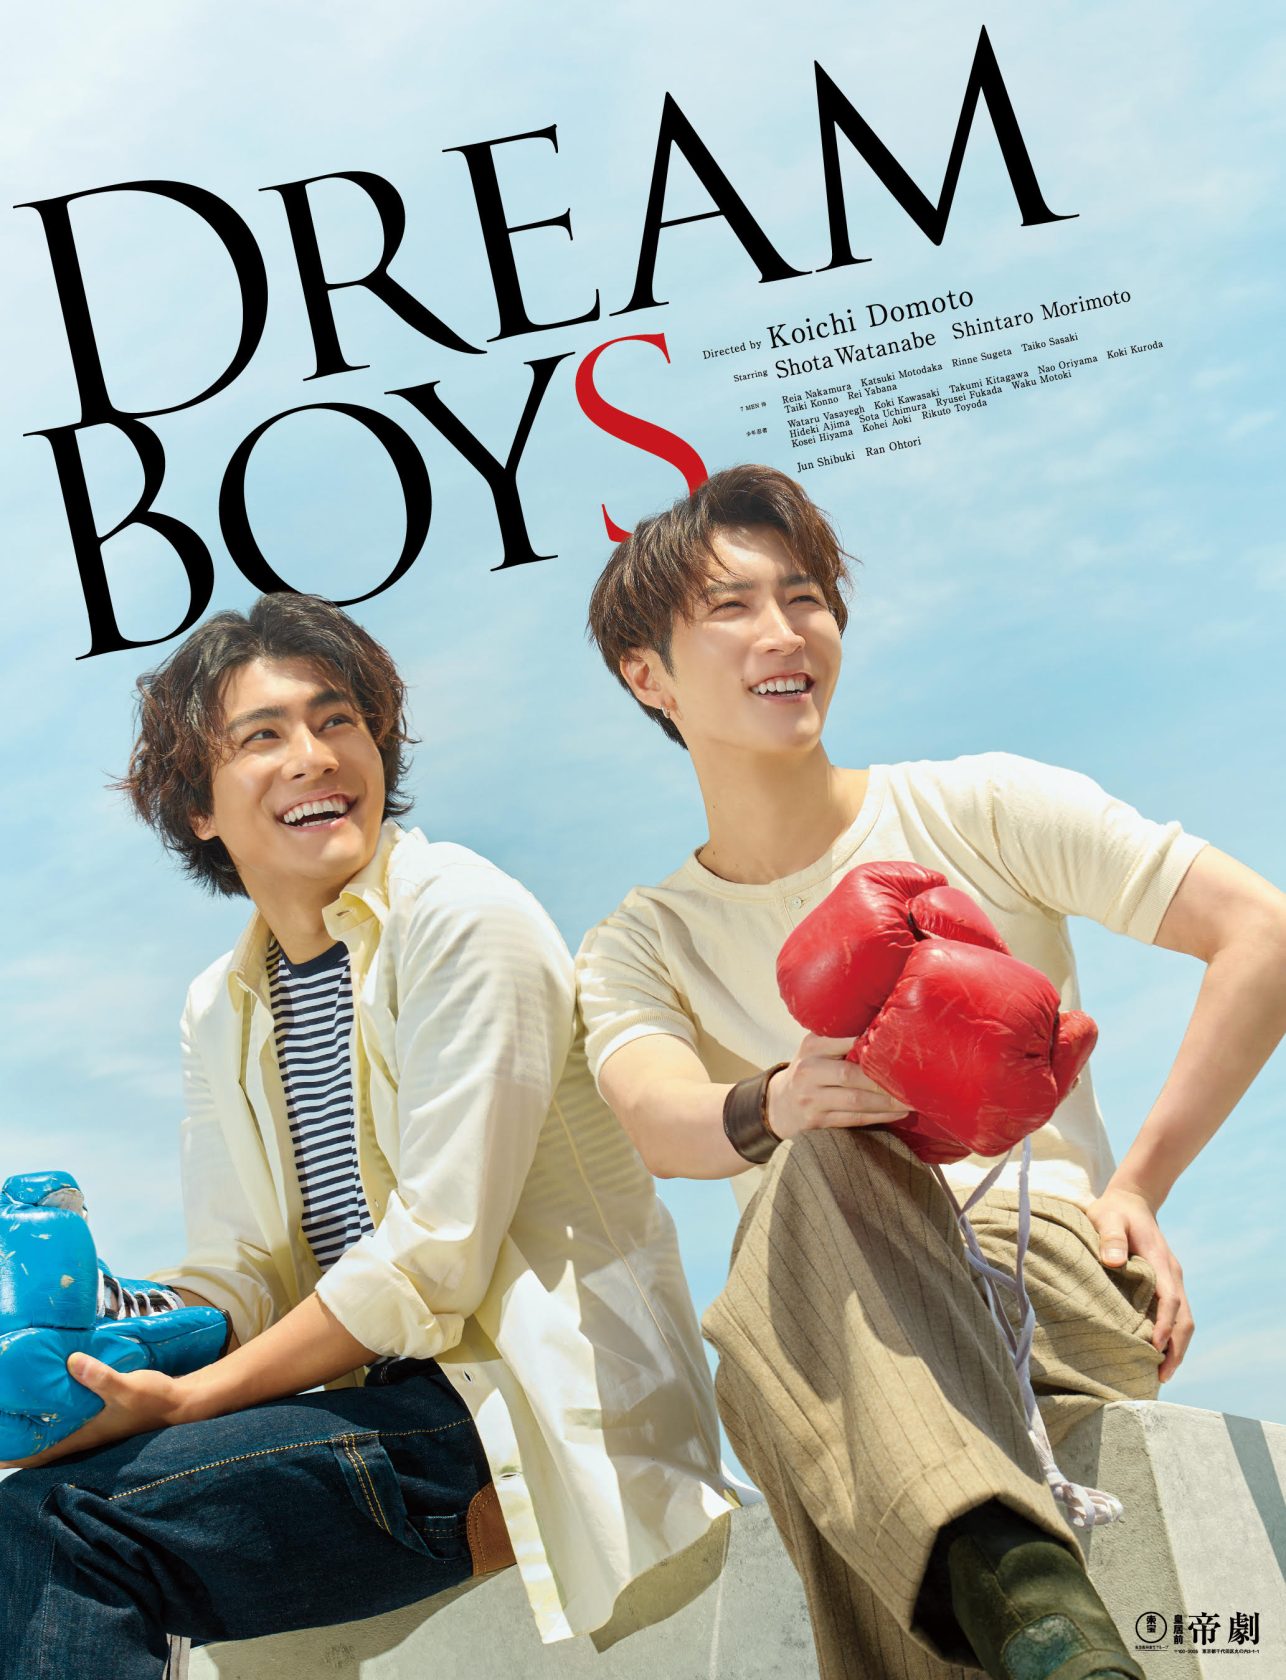 Snow Man渡辺翔太<コメントあり>主演舞台「DREAM BOYS」のDVD&ブルーレイ4・17発売が決定!